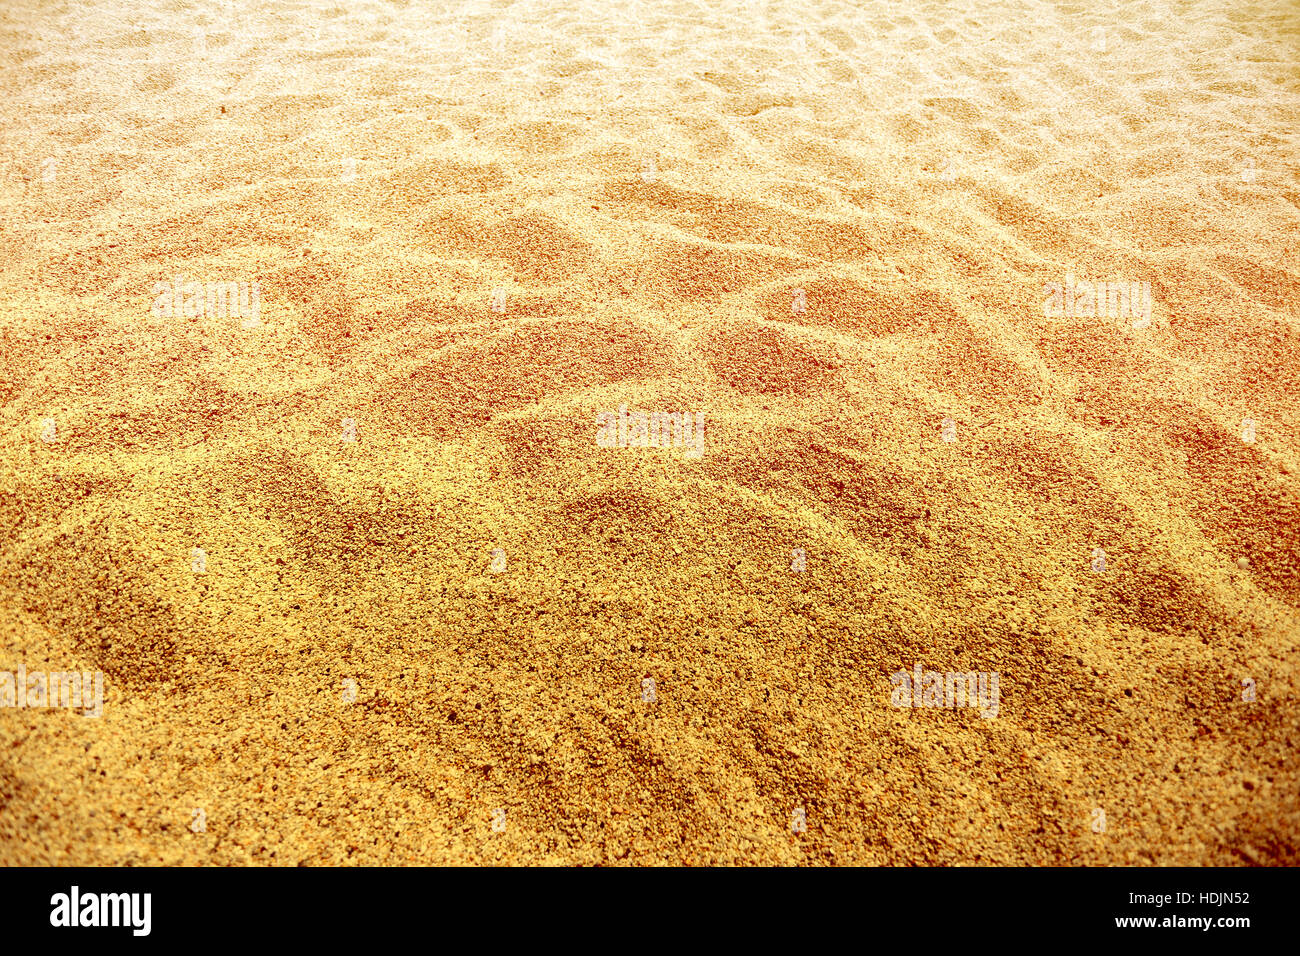 Photos d'un jaune vif sur la plage de sable Banque D'Images